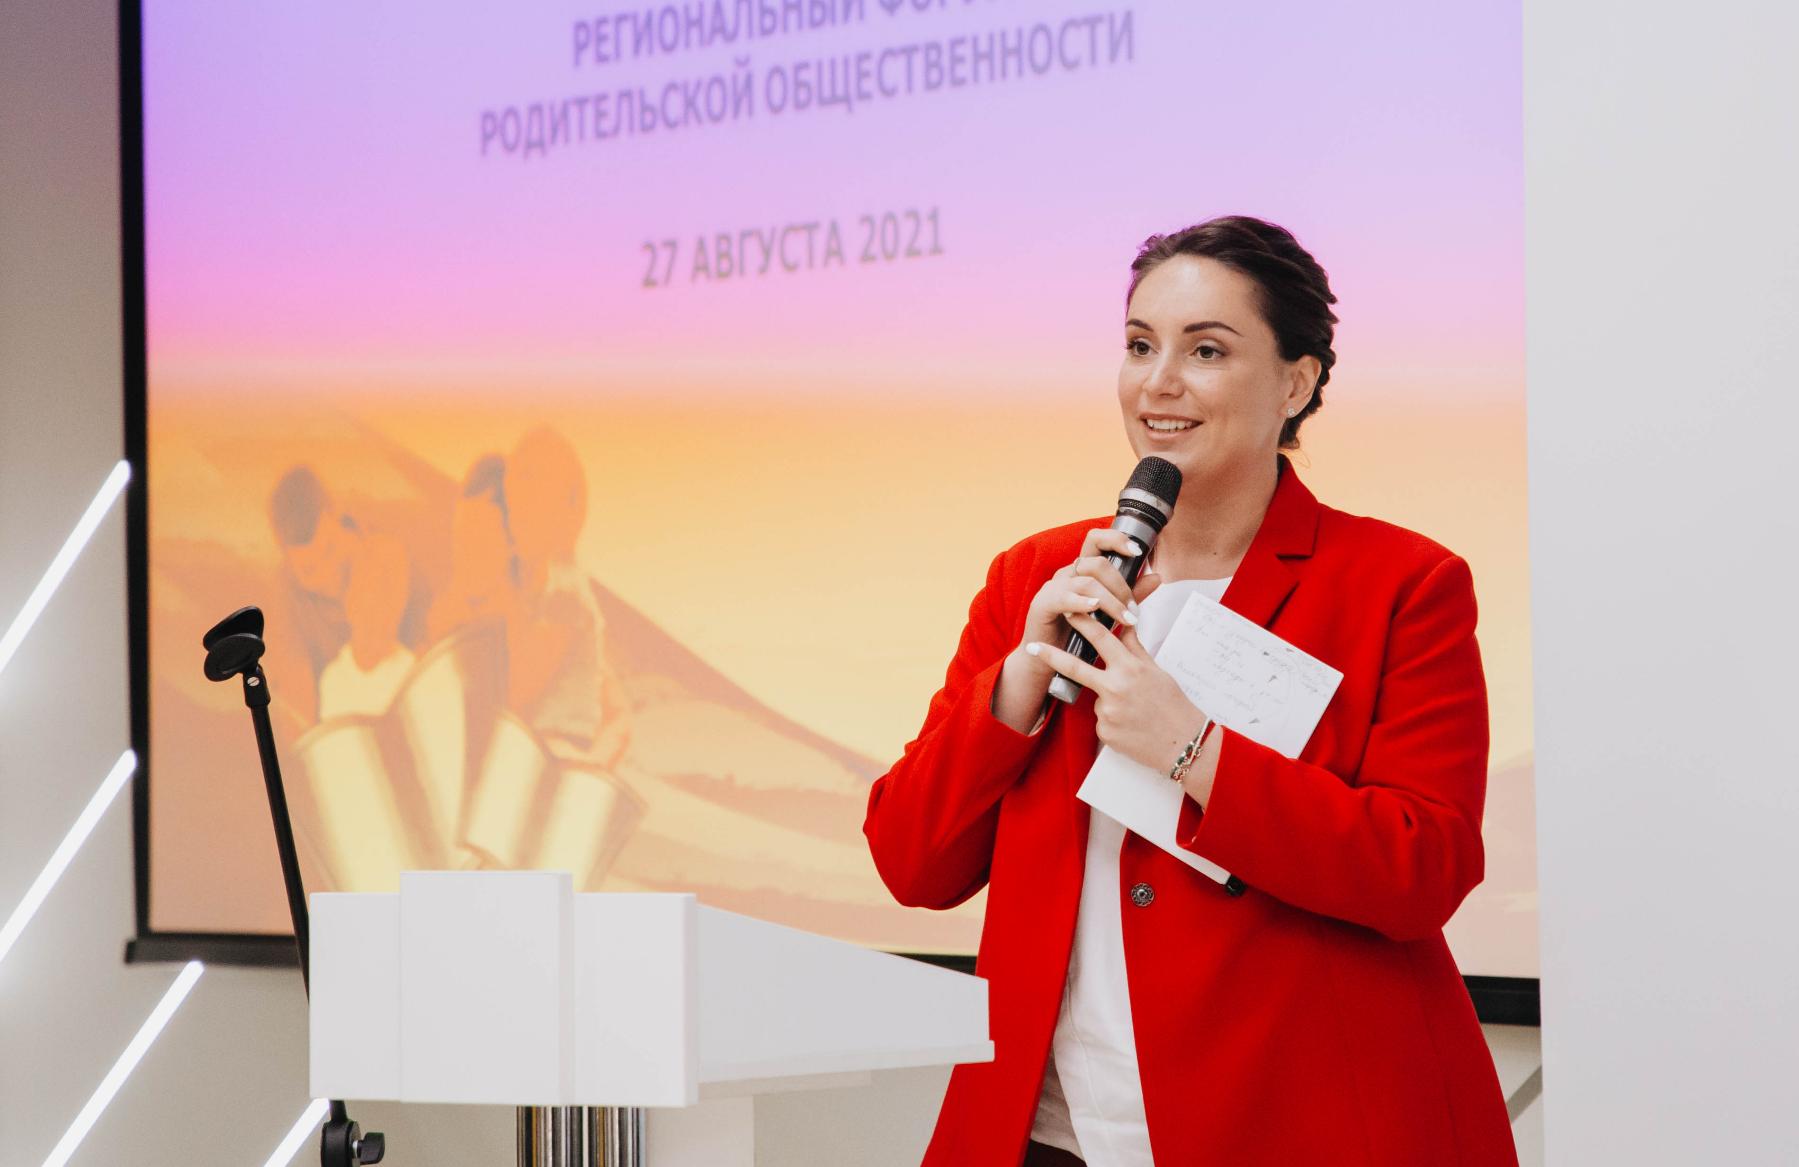 Юлия Саранова: как помощь людям открывает дорогу в политику